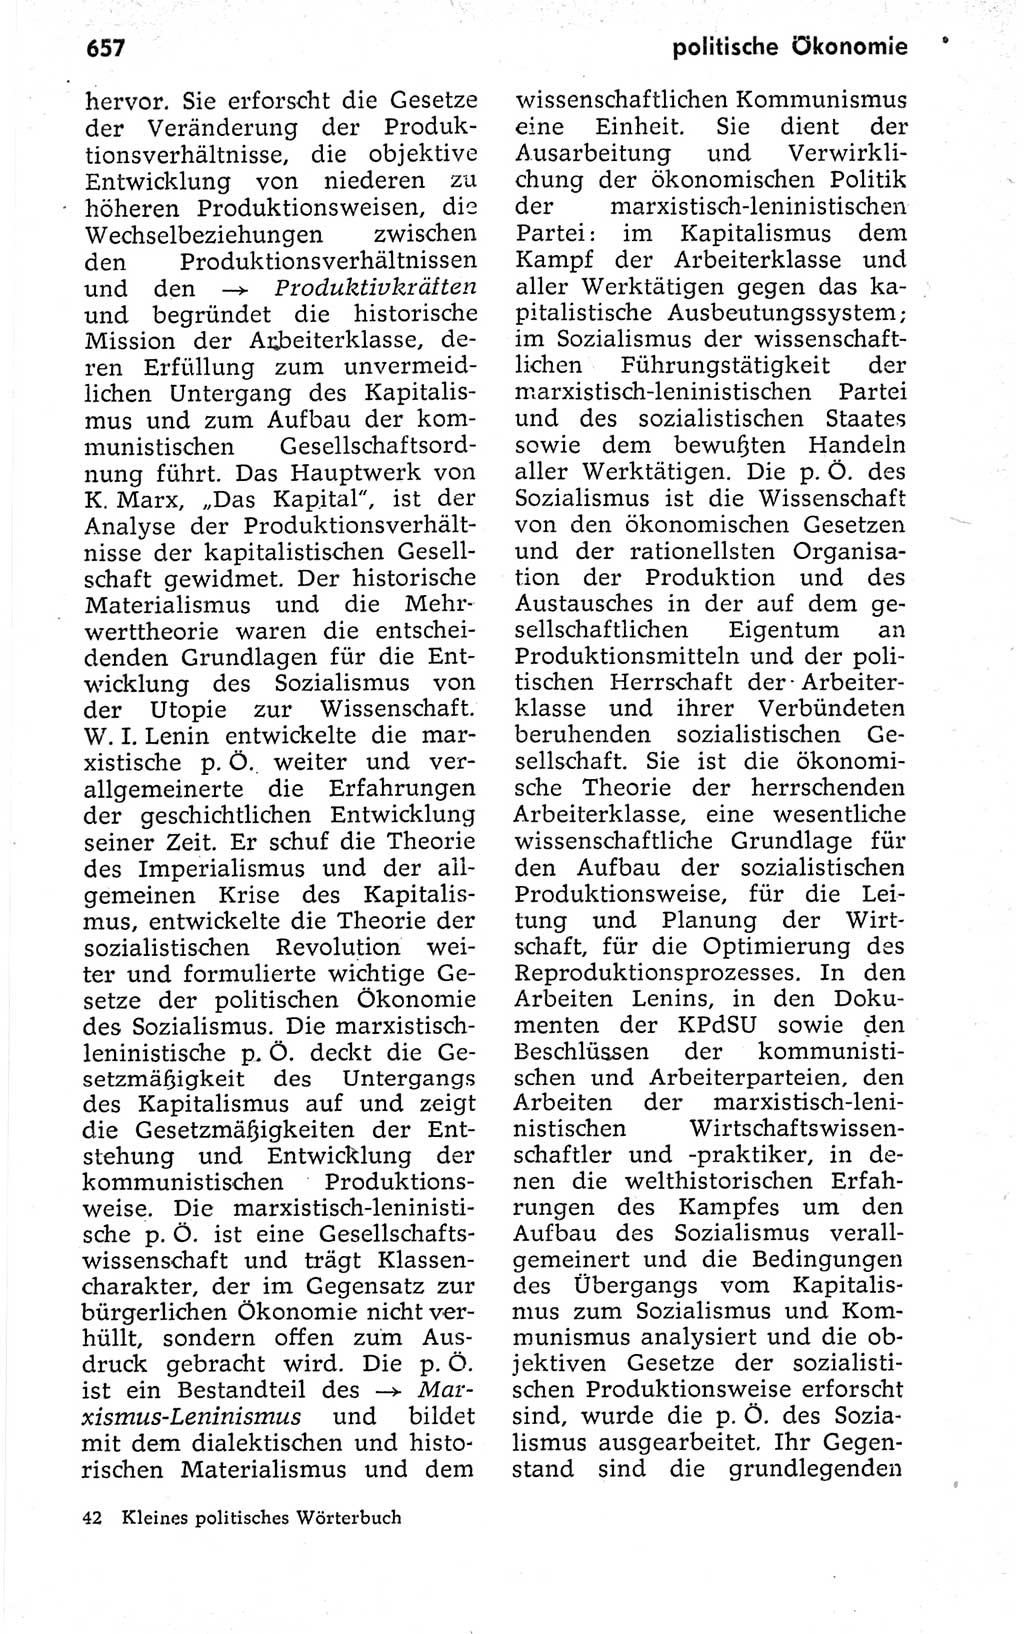 Kleines politisches Wörterbuch [Deutsche Demokratische Republik (DDR)] 1973, Seite 657 (Kl. pol. Wb. DDR 1973, S. 657)